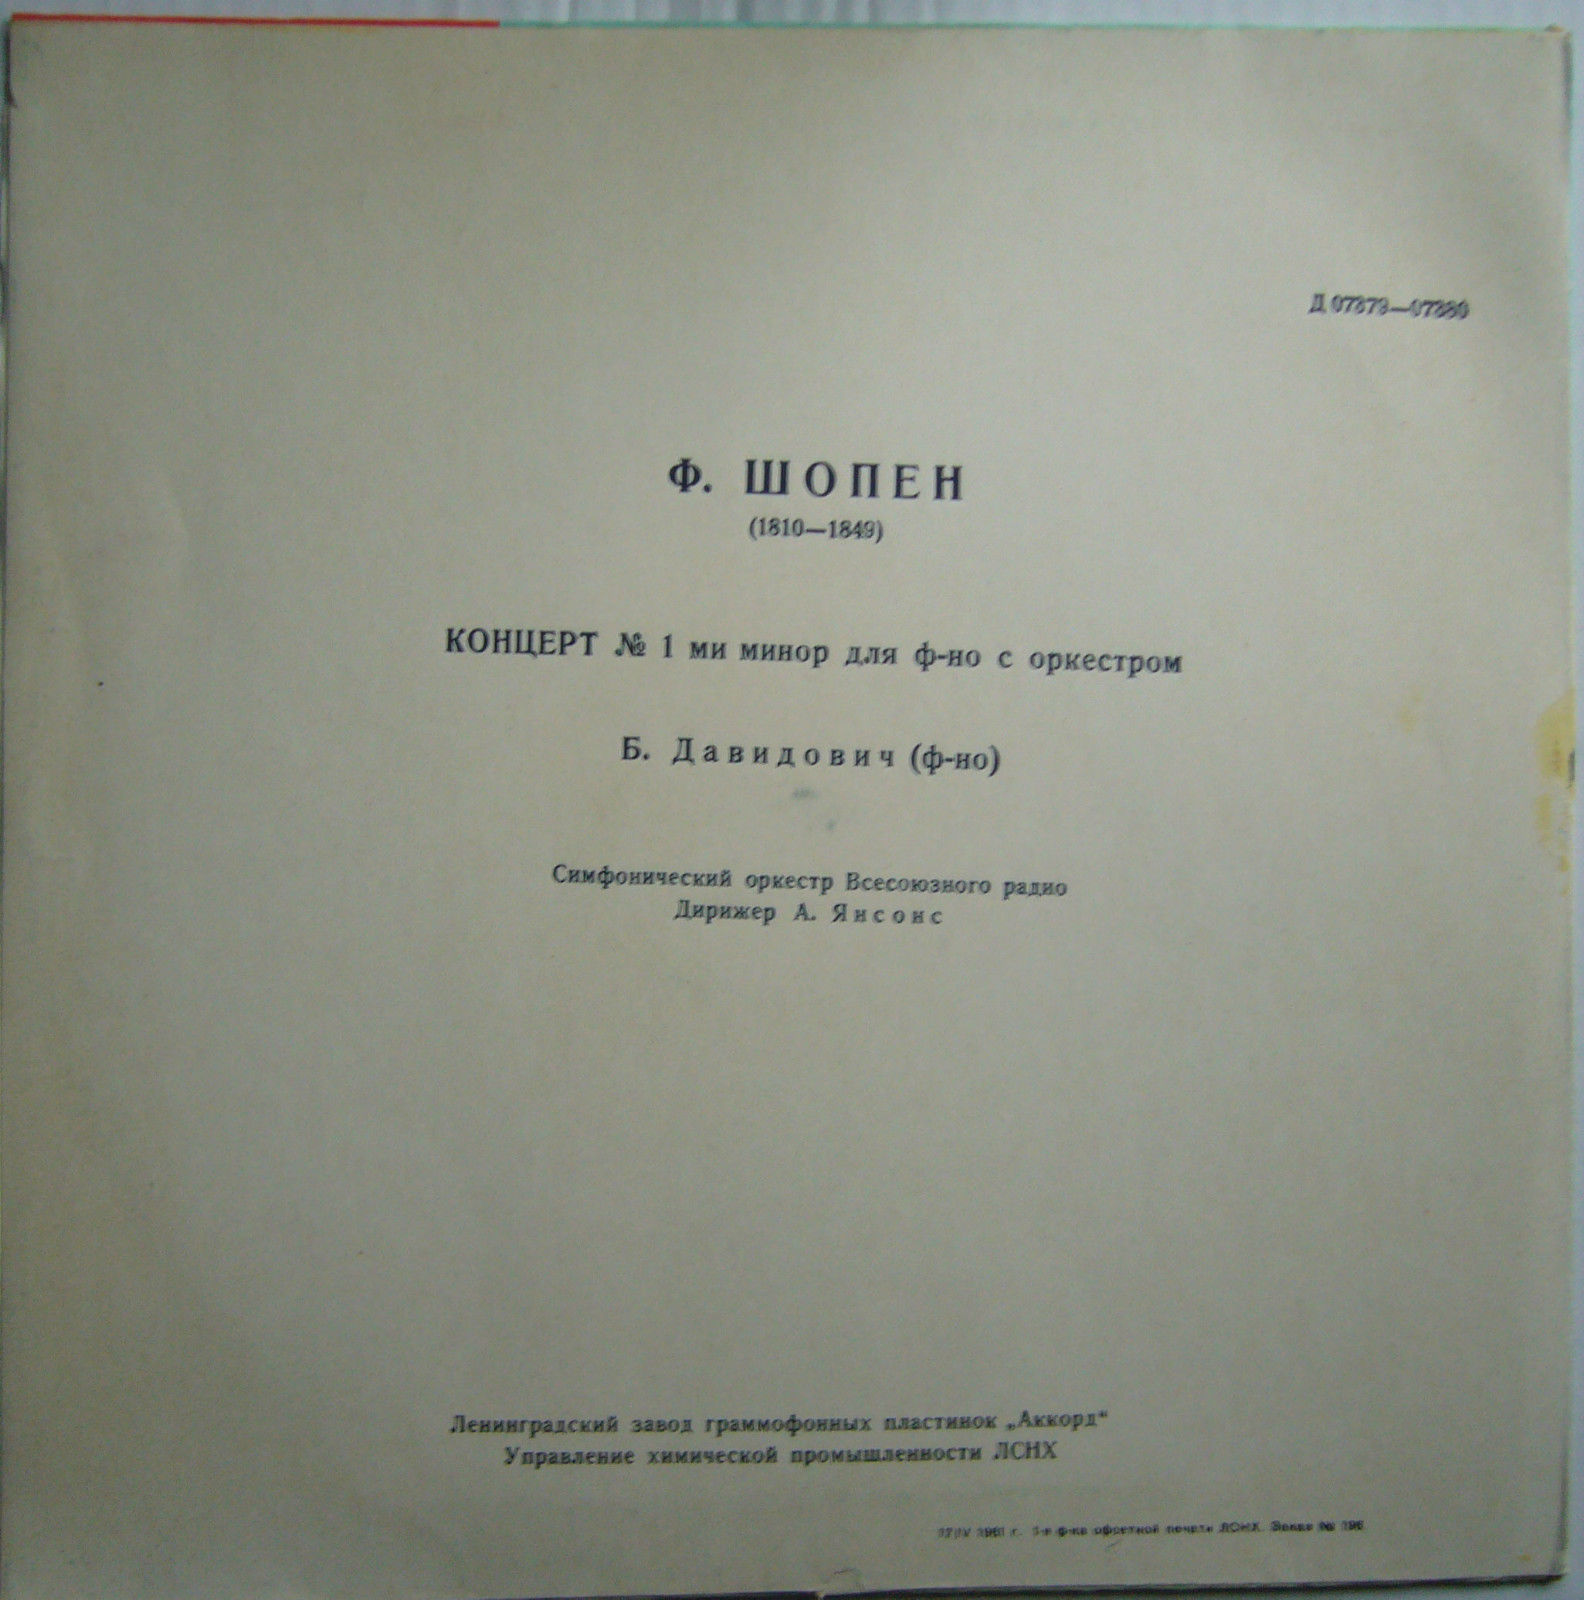 Ф. ШОПЕН Концерт № 1 для ф-но с оркестром (Б. Давидович, А. Янсонс)